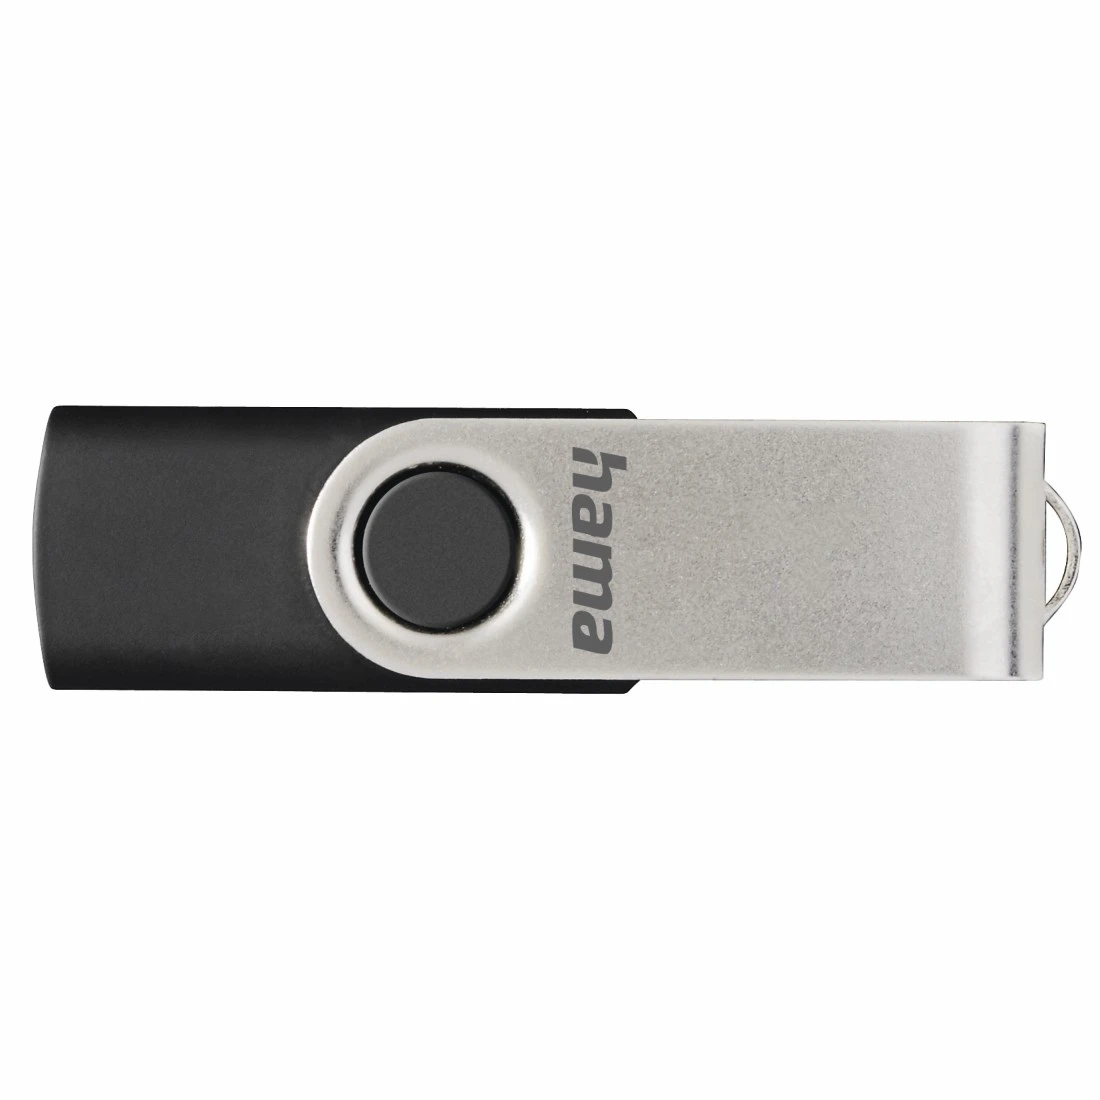 Clé USB Rotate, USB 2.0, 32GB, 10MB/s, Noire/Argenté